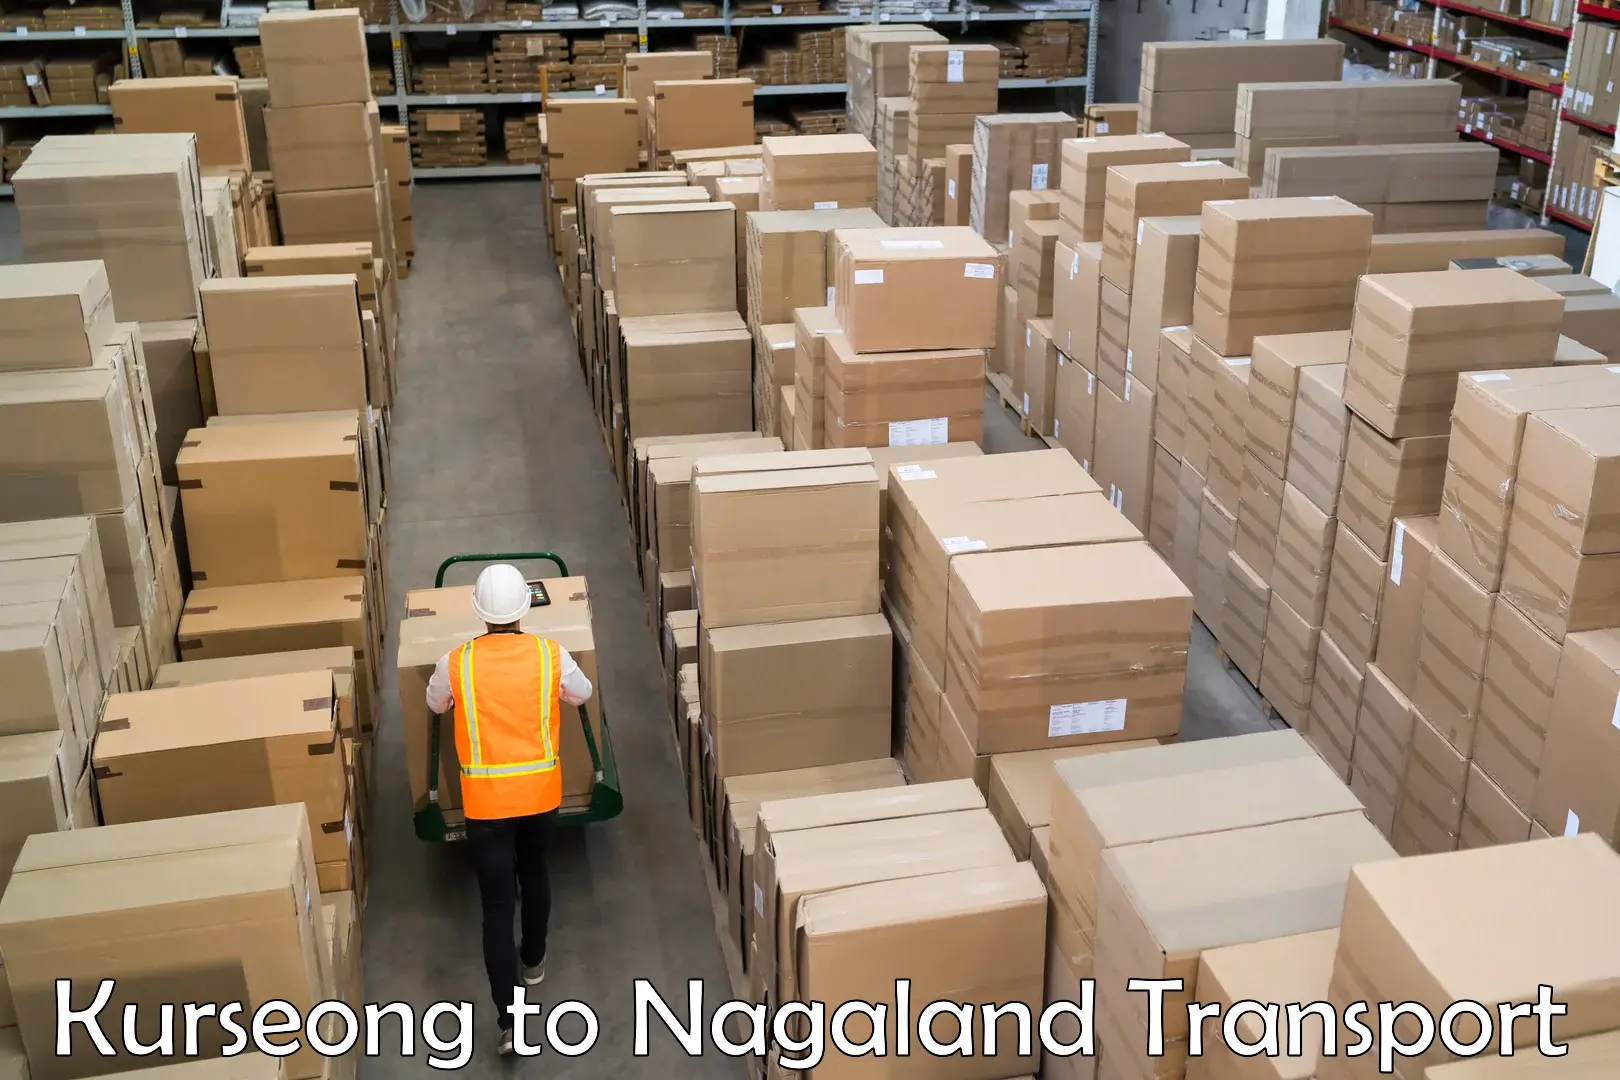 Delivery service Kurseong to Nagaland